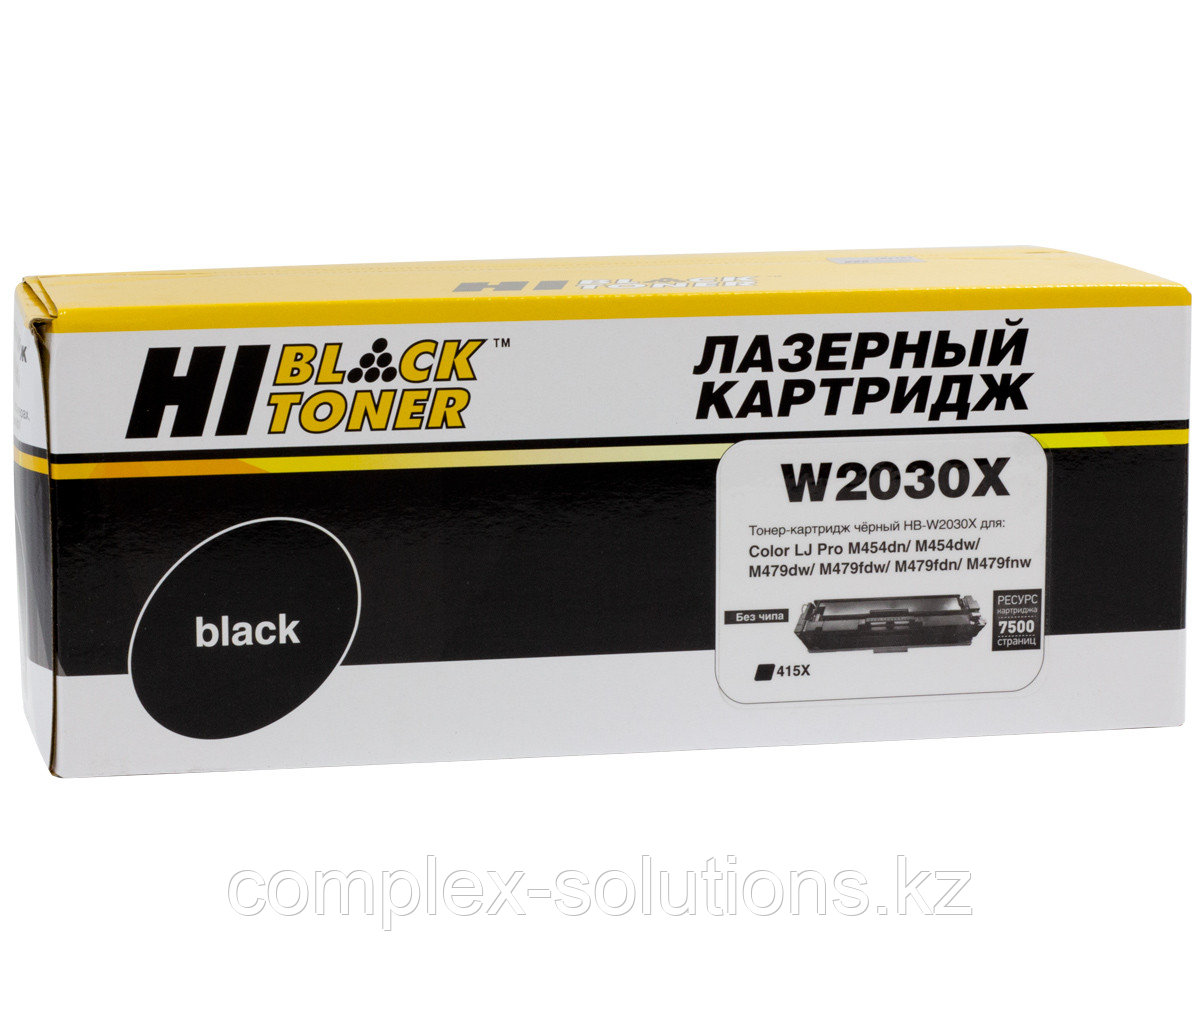 Тонер картридж Hi-Black [W2030X] для H-P Color LaserJet Pro M454dn | M479dw, №415X, Bk, 7,5K б | ч |